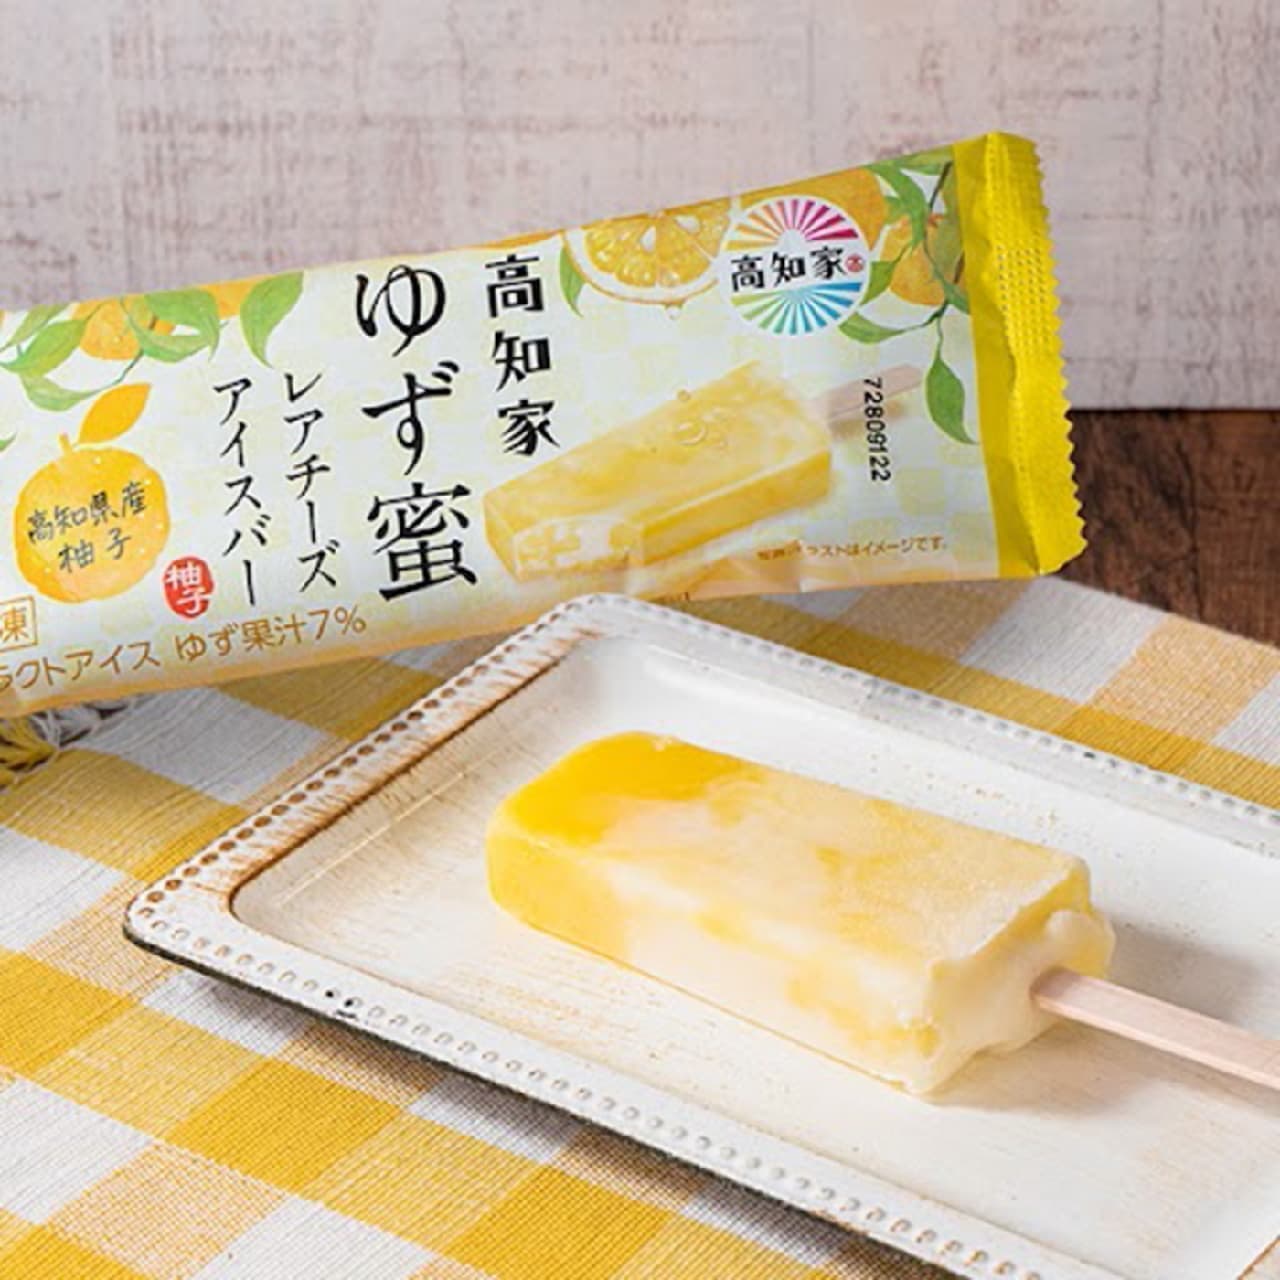 Famima "Andico Kochiya Yuzu Honey Rare Cheese Ice Cream Bar".